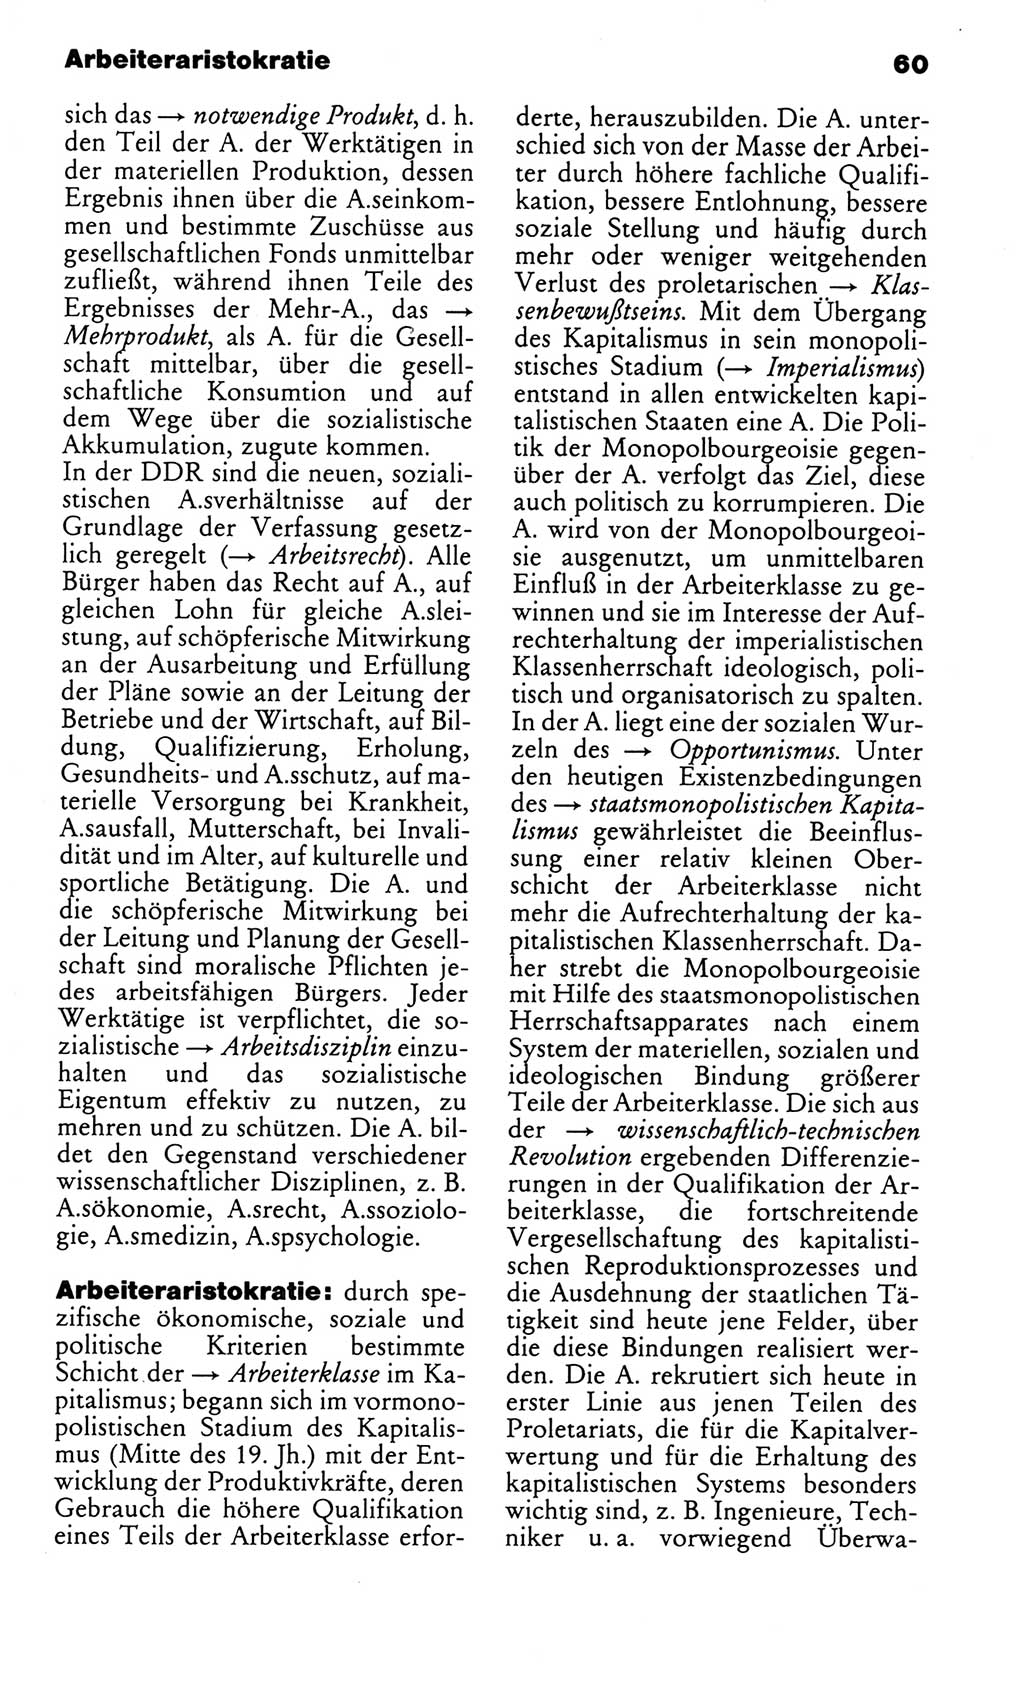 Kleines politisches Wörterbuch [Deutsche Demokratische Republik (DDR)] 1986, Seite 60 (Kl. pol. Wb. DDR 1986, S. 60)